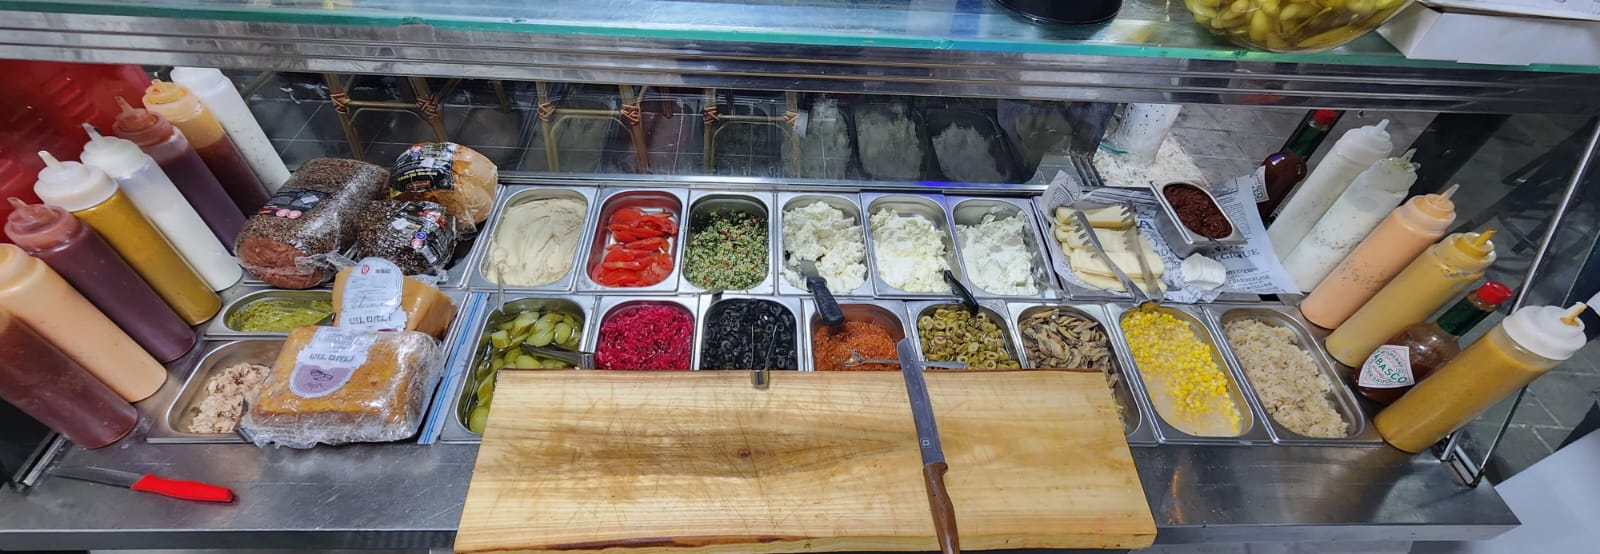  جديد في يافا: مطعم توست ستيشن لأشهى الوجبات الخفيفة والساندويشات 